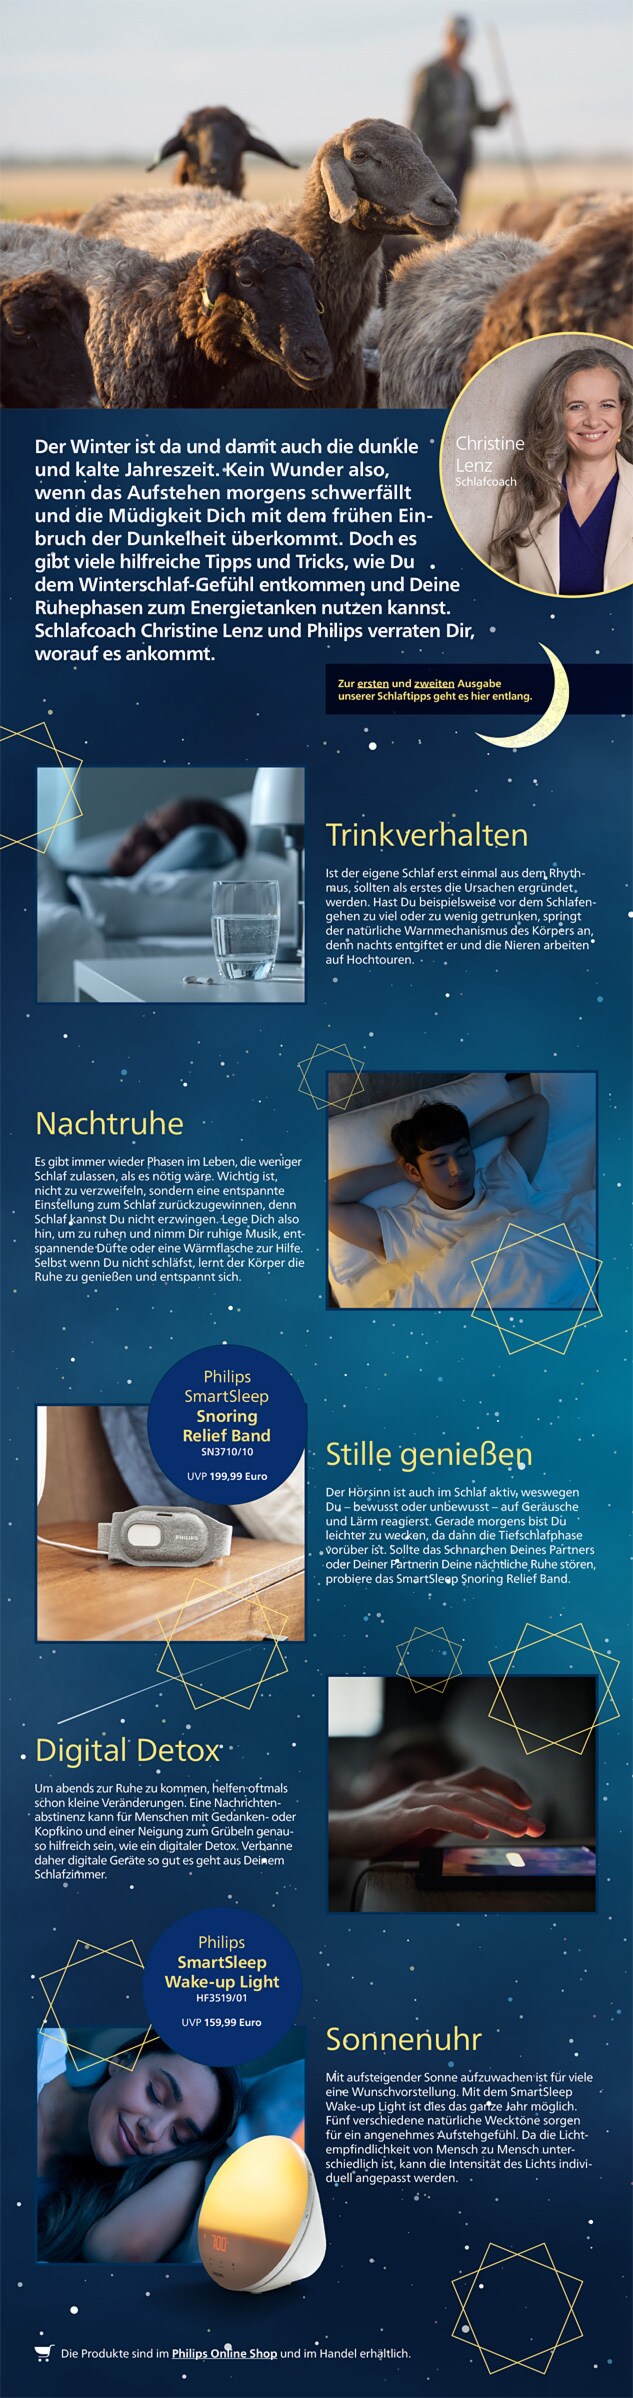 Philips Themensheet Schlaftipps 3